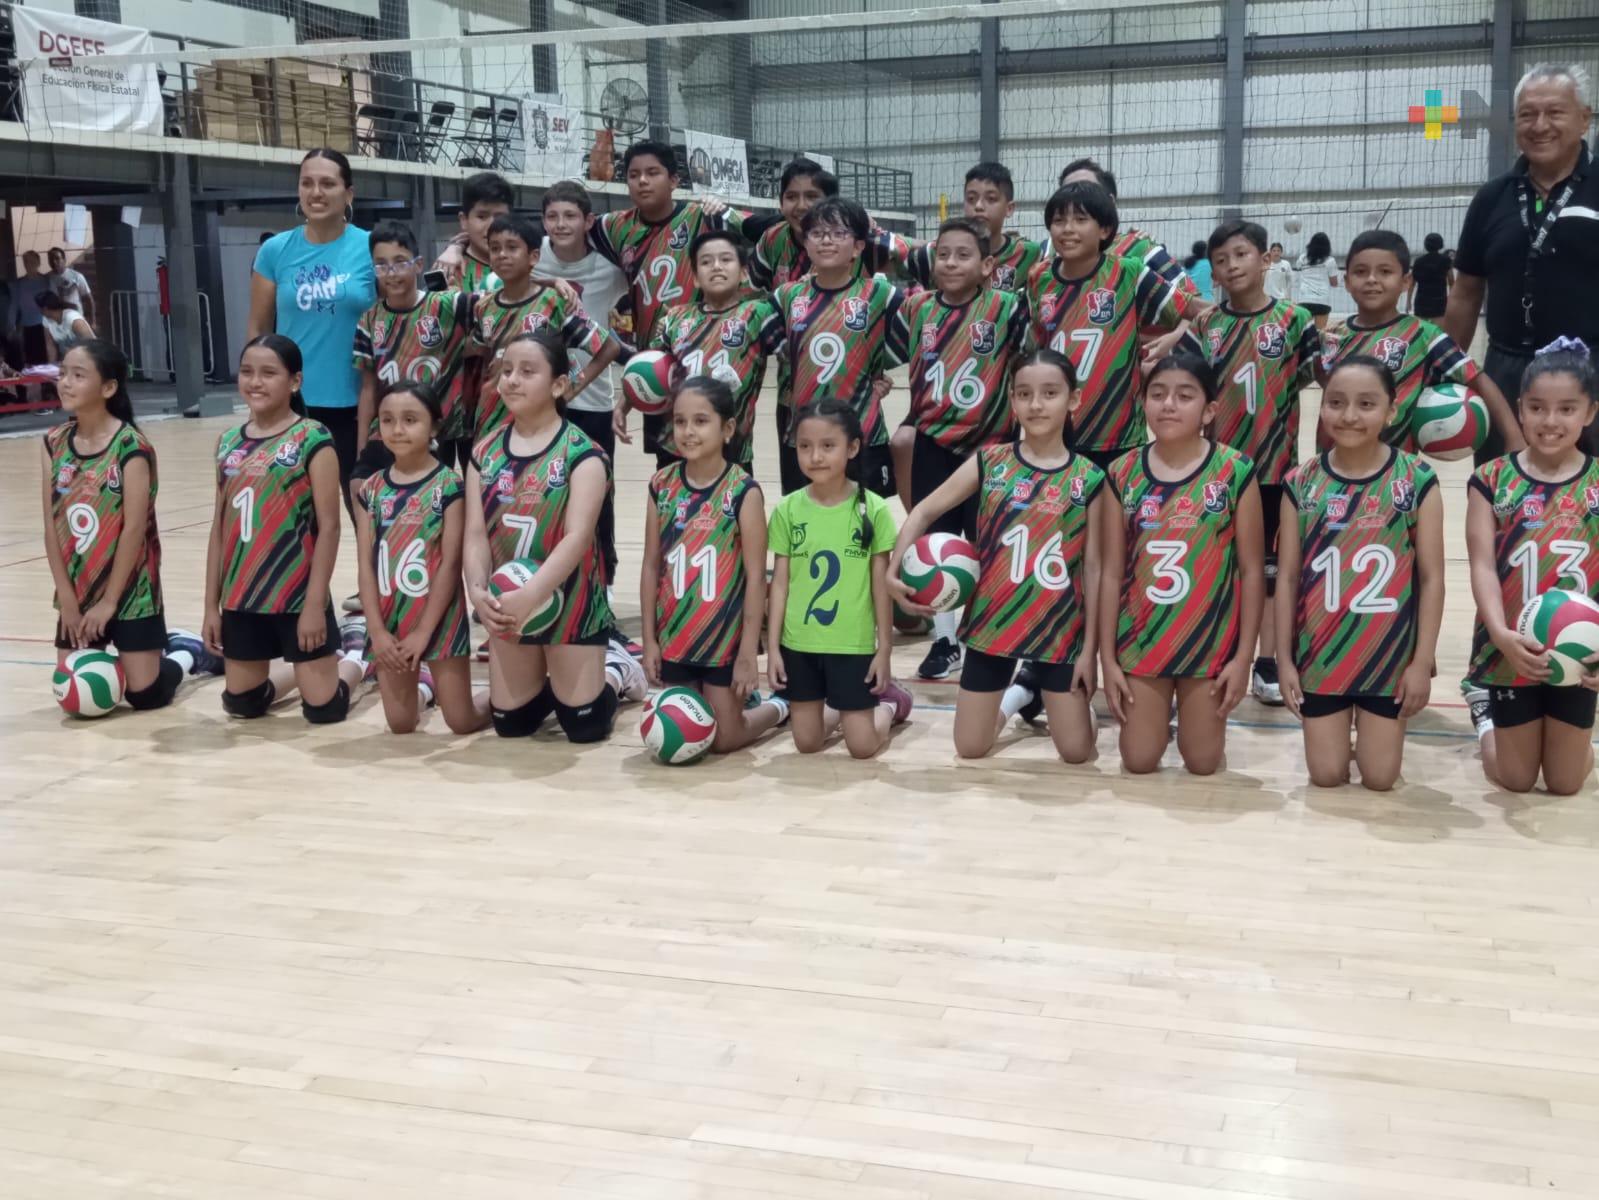 Escuela de Voleibol Salvador Díaz Mirón aumenta en número de alumnos